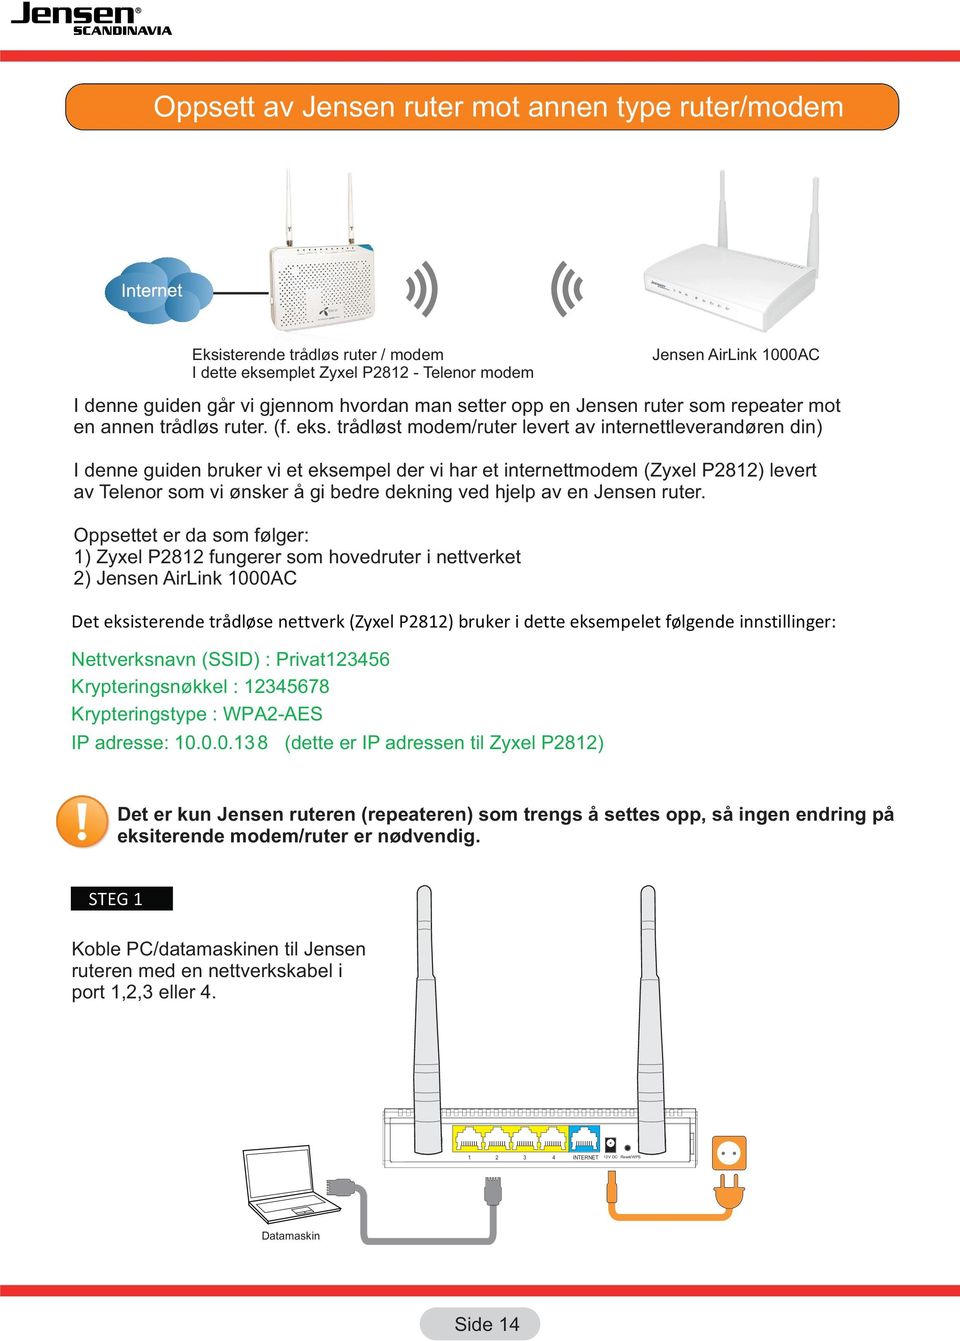 trådløst modem/ruter levert av internettleverandøren din) I denne guiden bruker vi et eksempel der vi har et internettmodem (Zyxel P81) levert av Telenor som vi ønsker å gi bedre dekning ved hjelp av